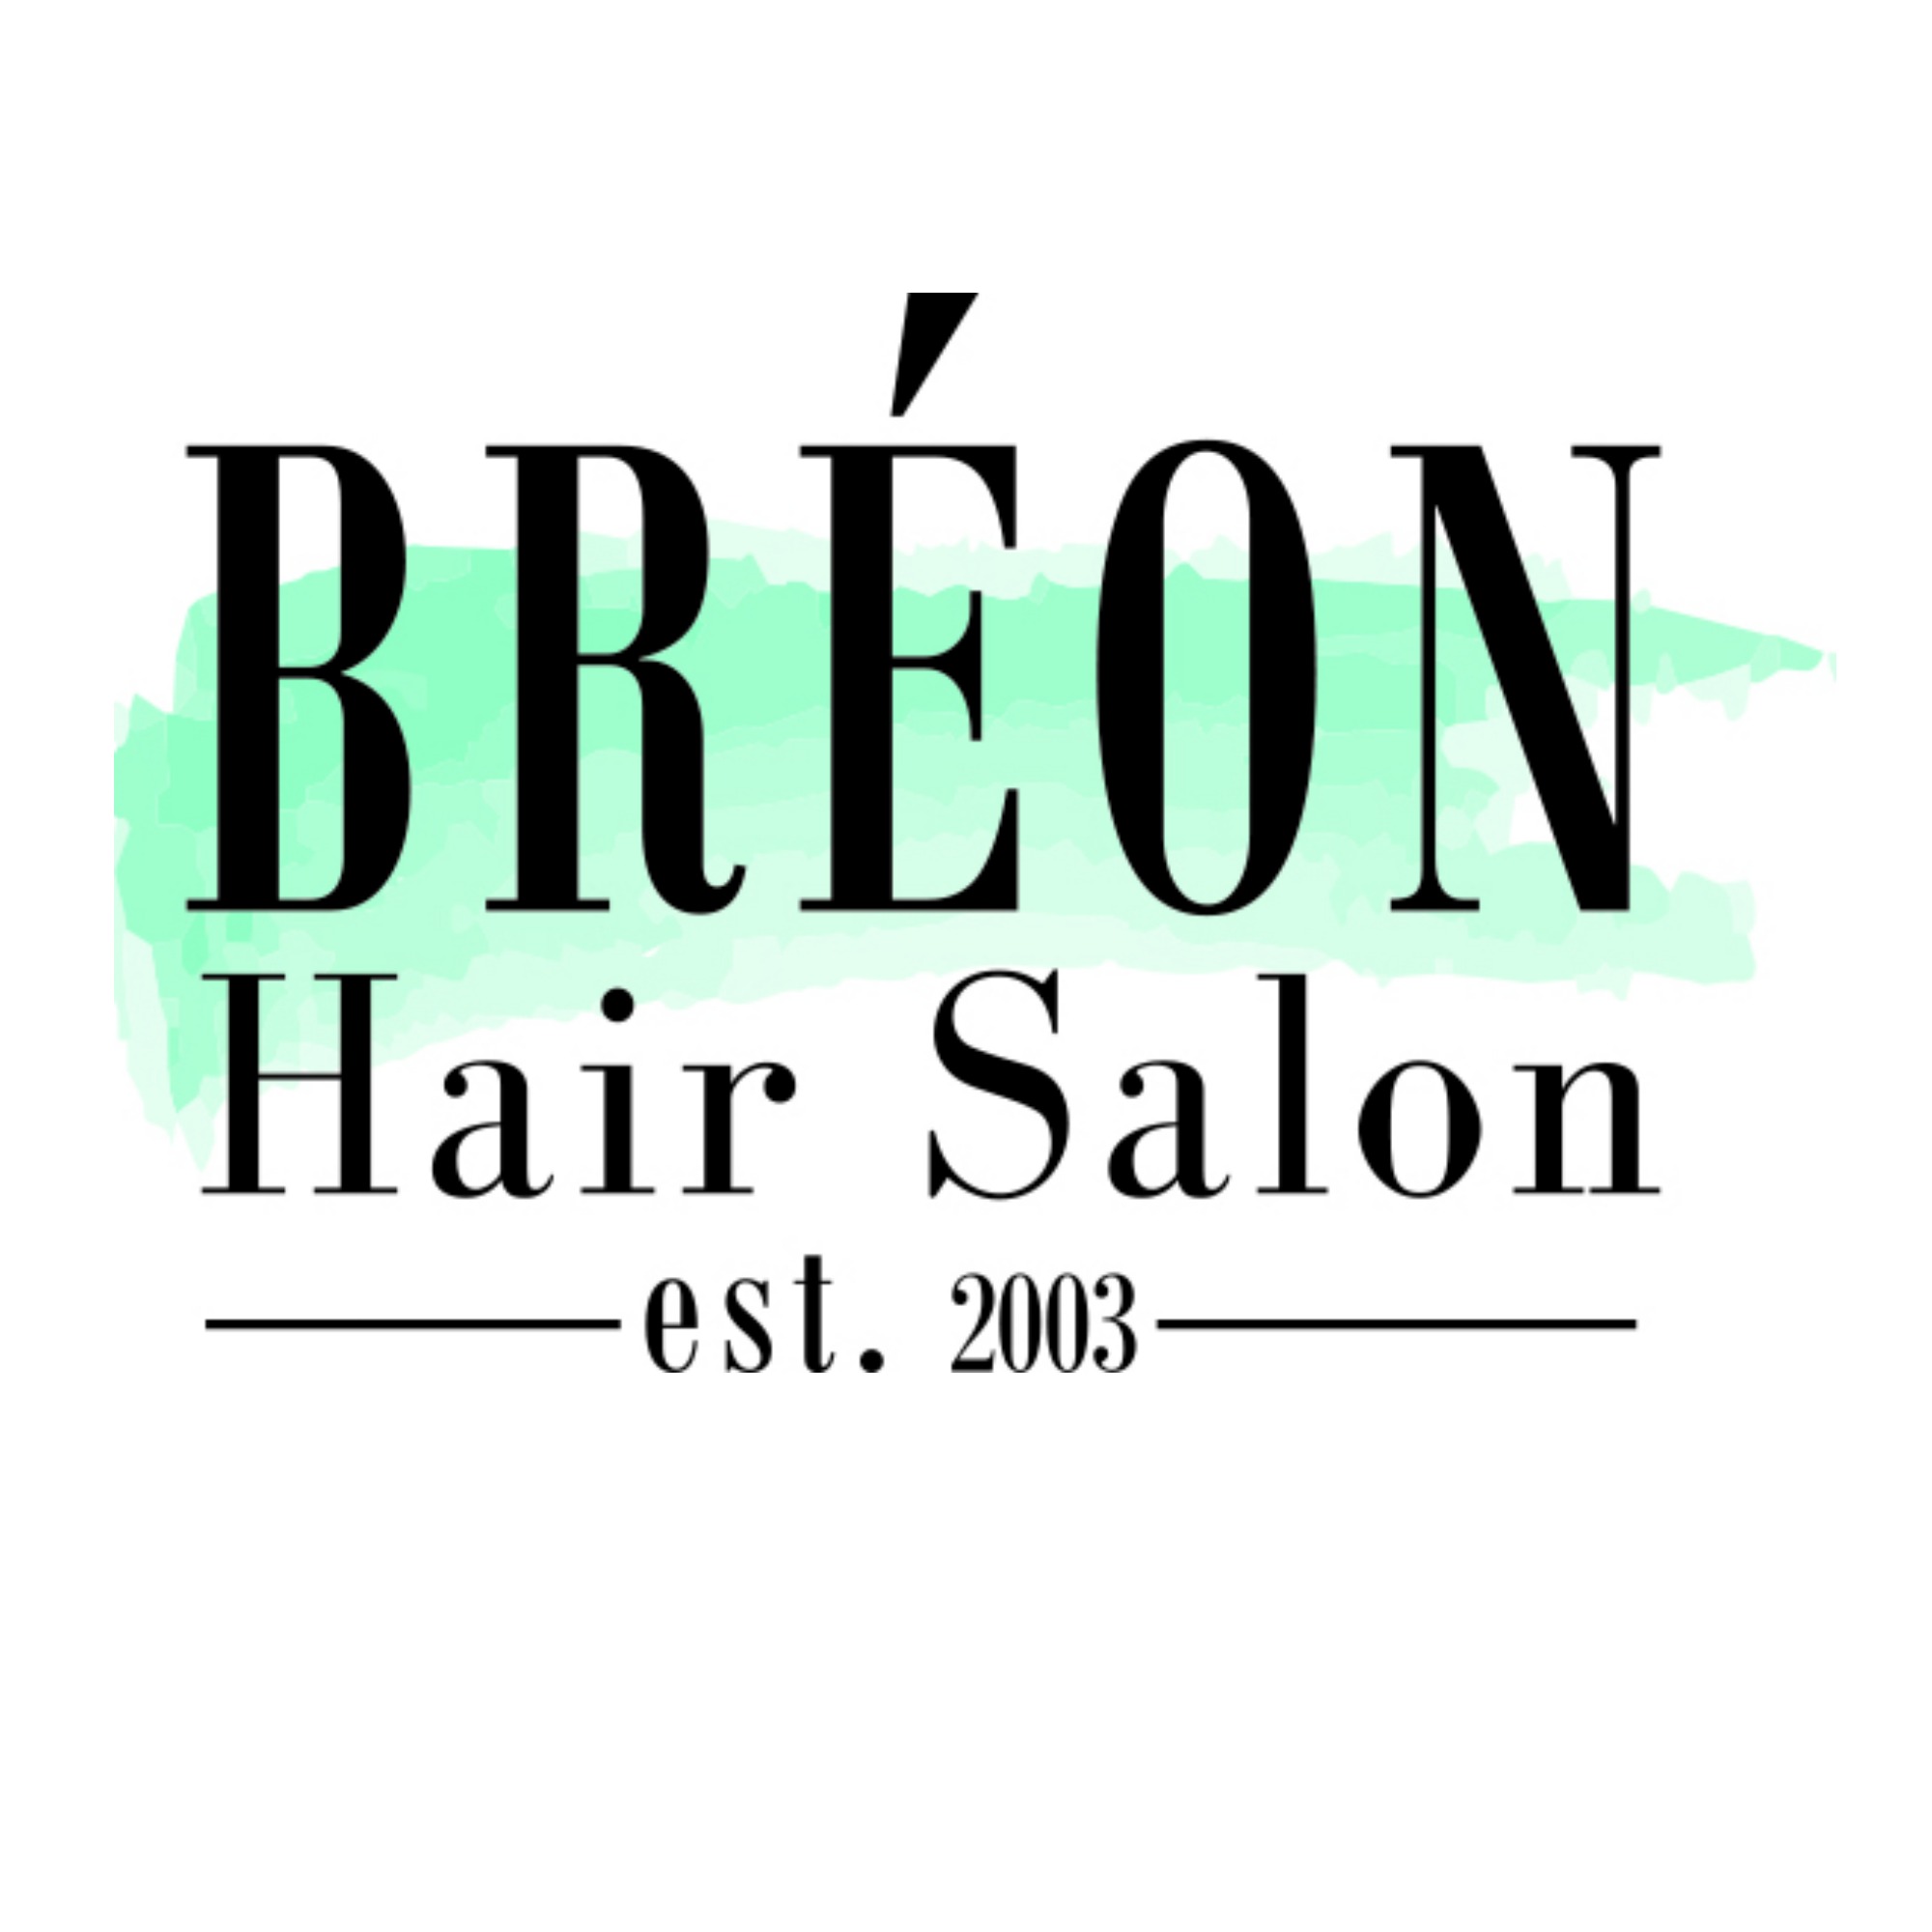 Breon Hair Salon